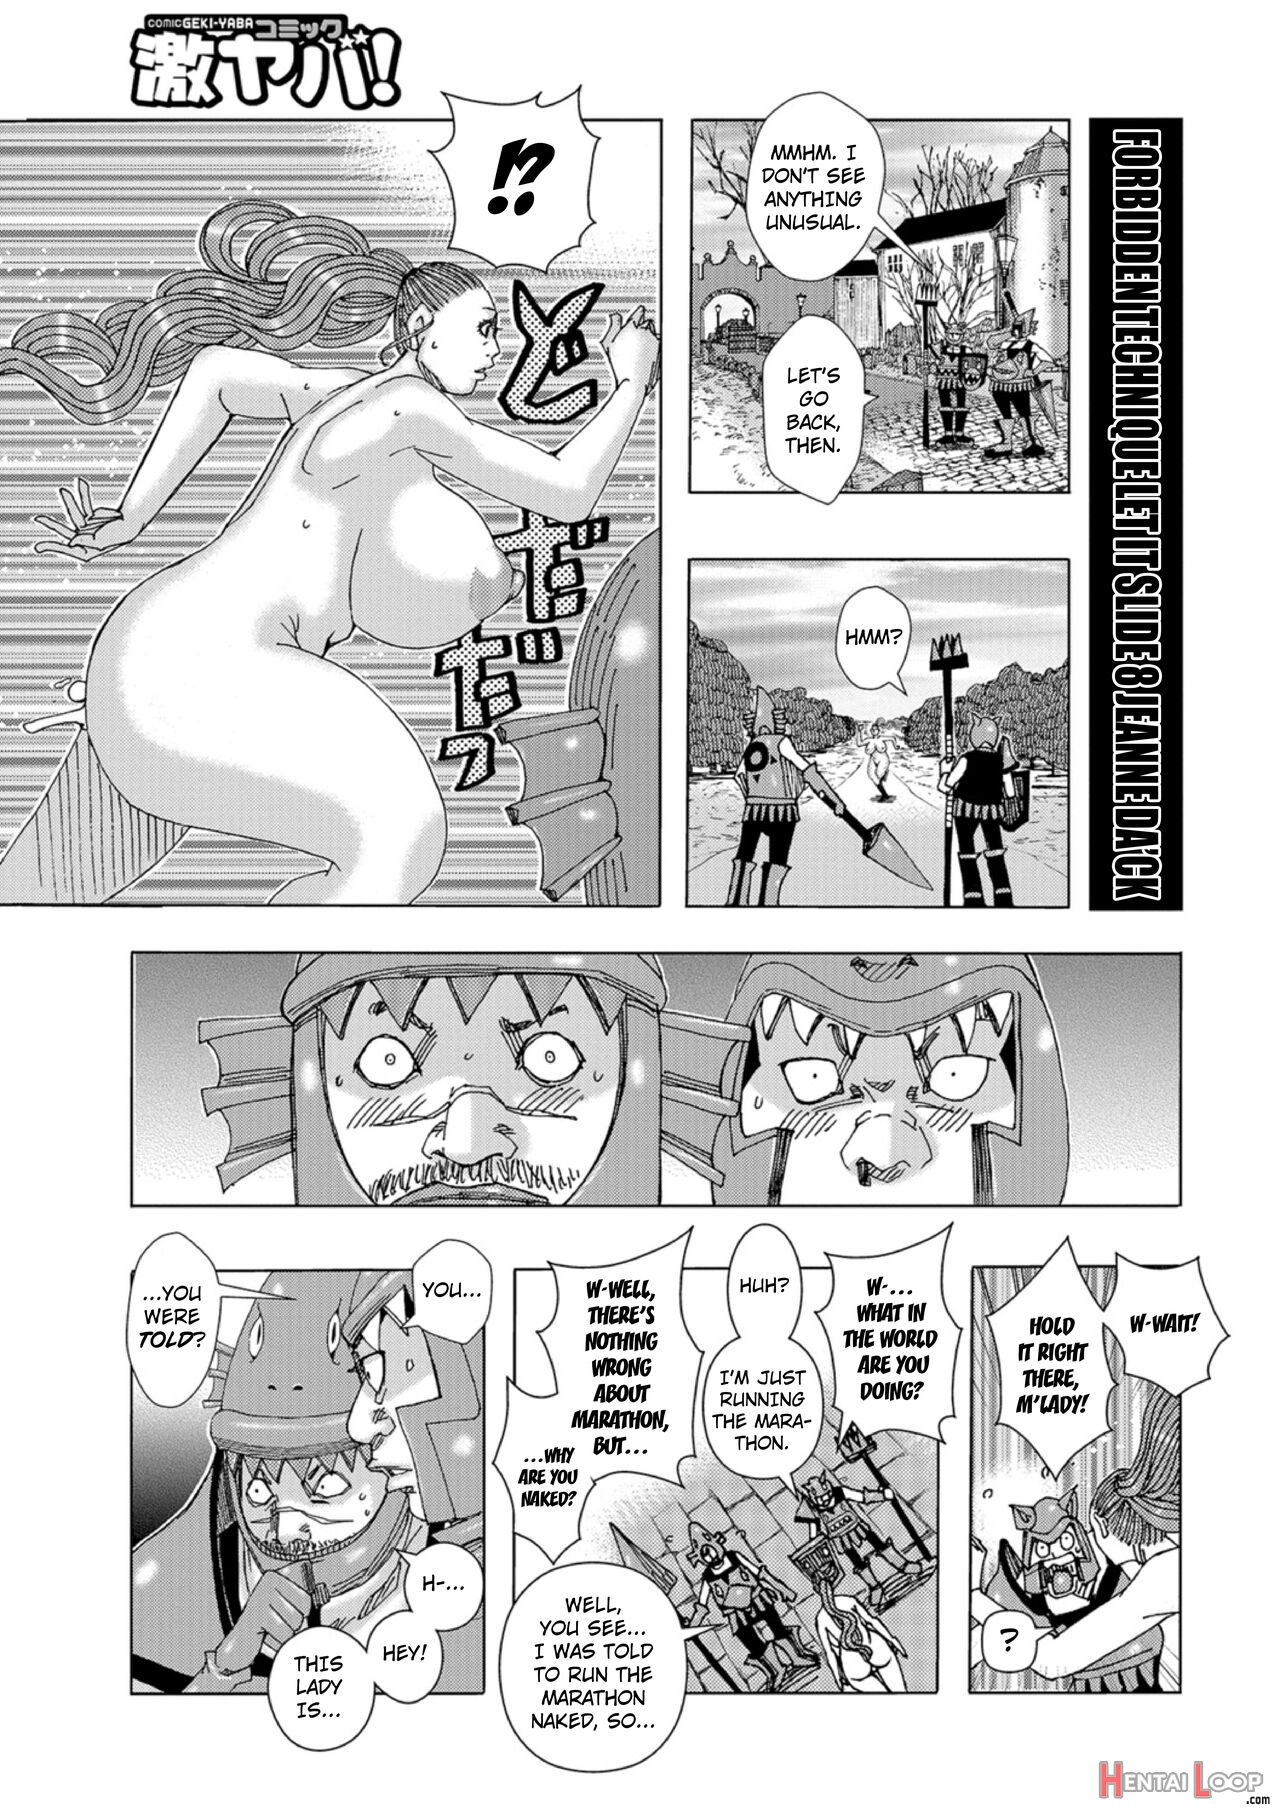 Kinjutsu Makari Tooru 8 page 1